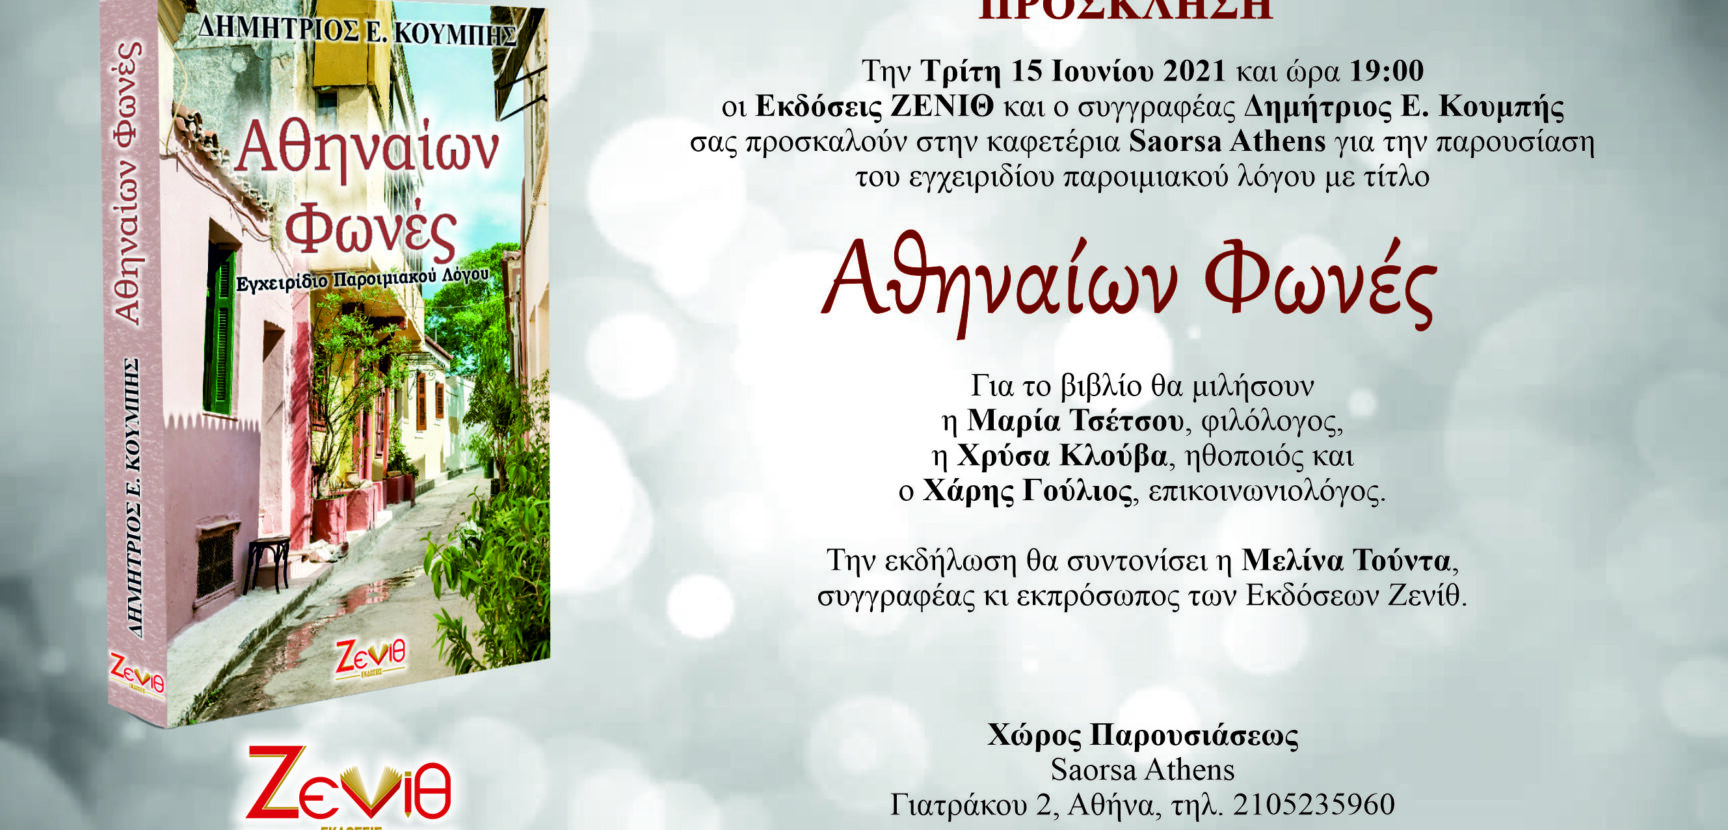 Παρουσίαση βιβλίου "Αθηναίων Φωνές"